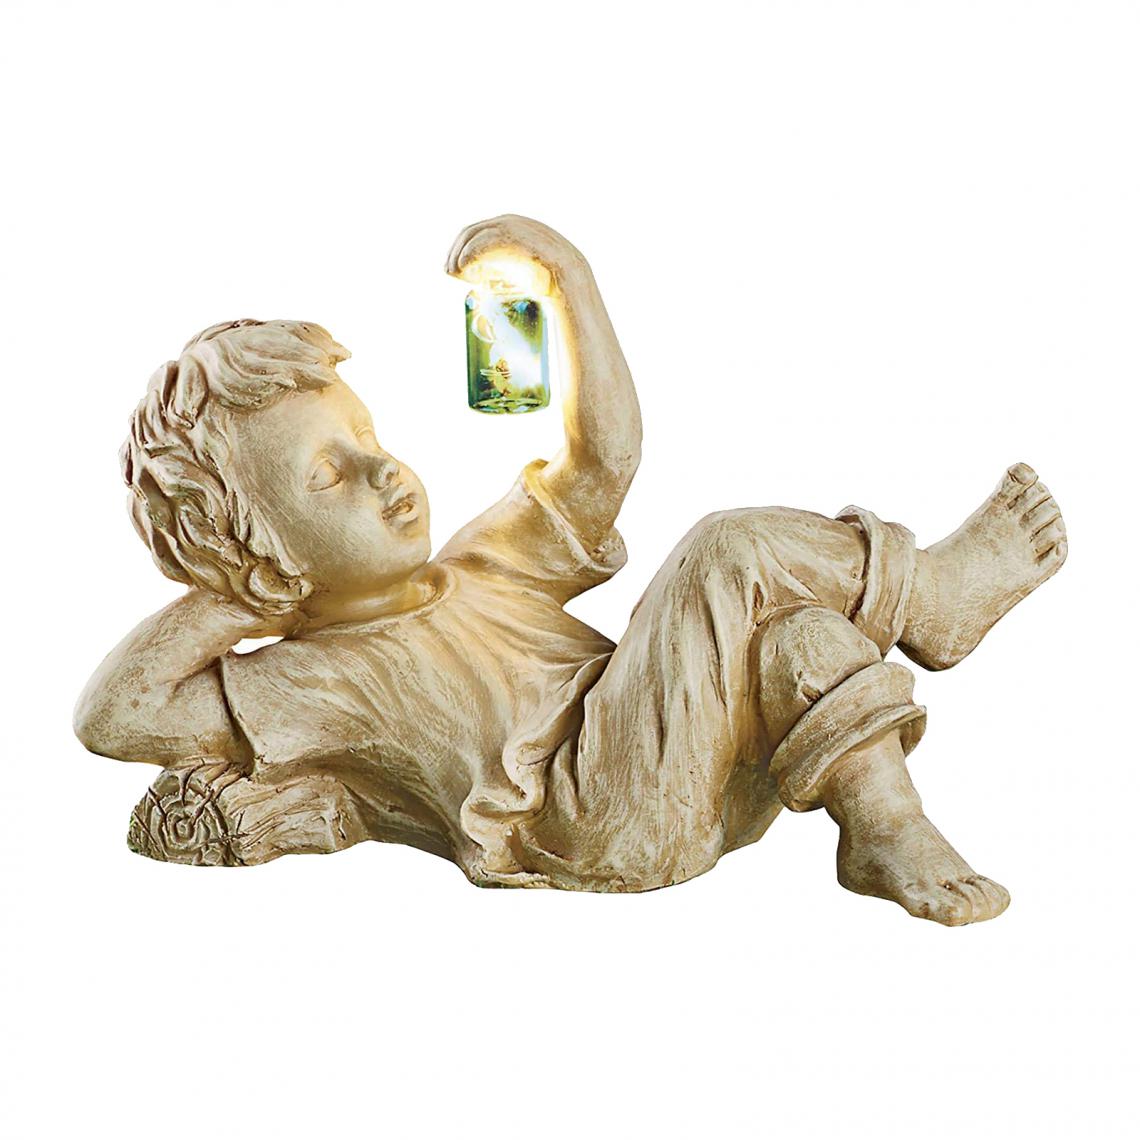 marque generique - Figurines De Statue Lumineuse Solaire Romantique Pour Fille De Décor à La Maison De Chemin De Pelouse - Petite déco d'exterieur